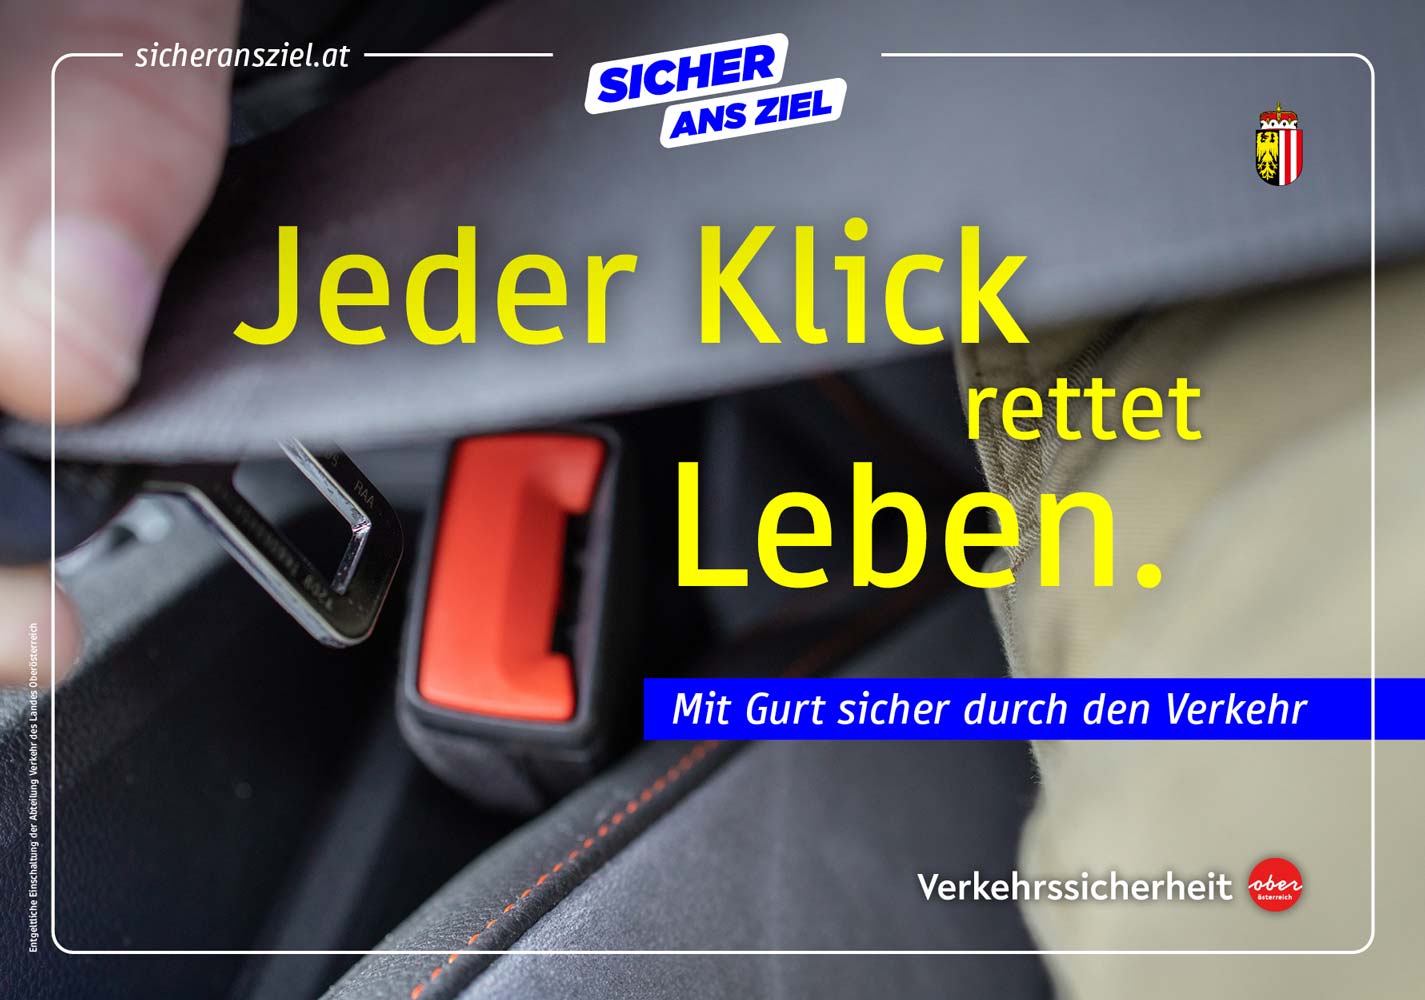 Kampagnen-Sujet, wo ein Autofahrer seinen Gurt ins Schloss klickt. Headline: Jeder Klick rettet Leben.